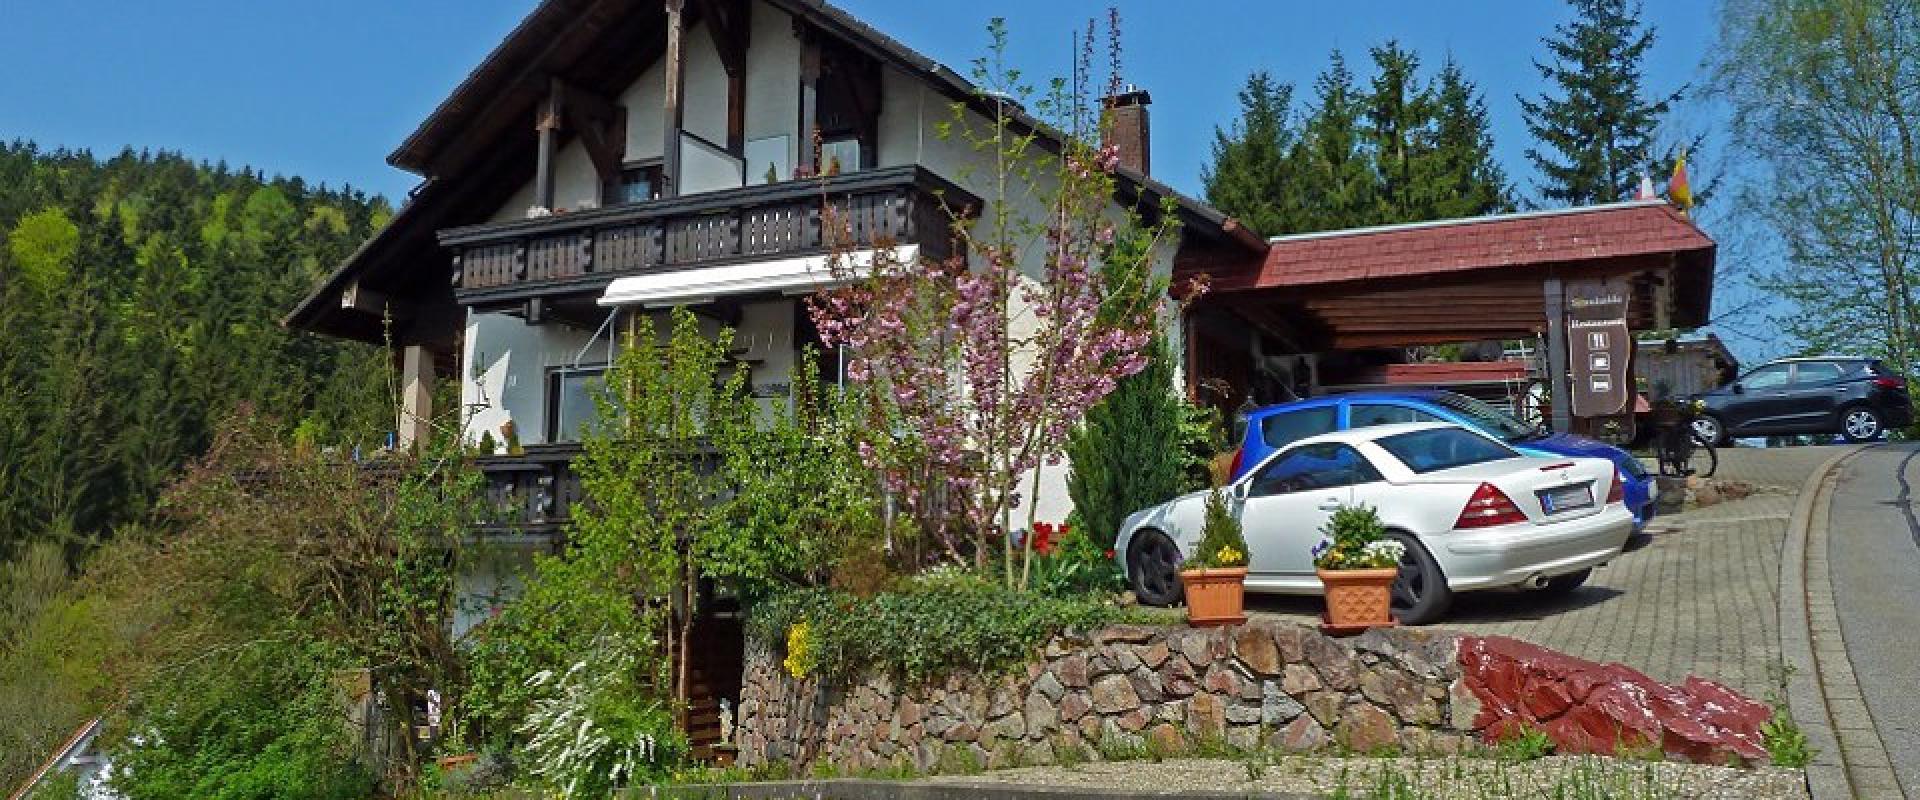 14376 Motorrad Hotel Sonnhalde im Schwarzwald.jpg